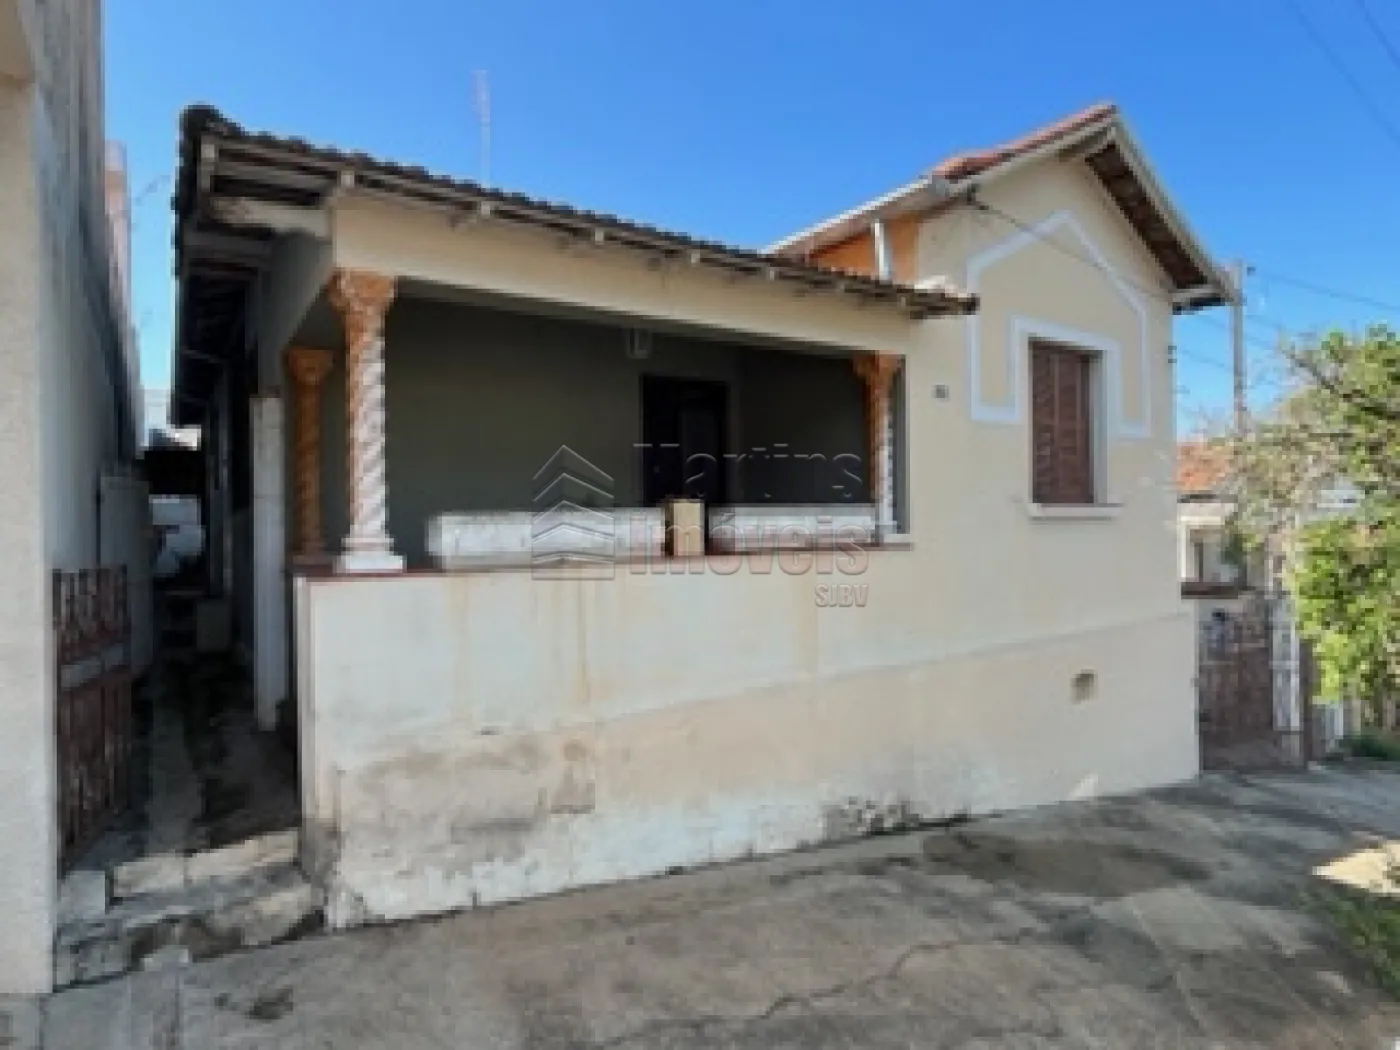 Alugar Casa / Padrão em São João da Boa Vista R$ 550,00 - Foto 1